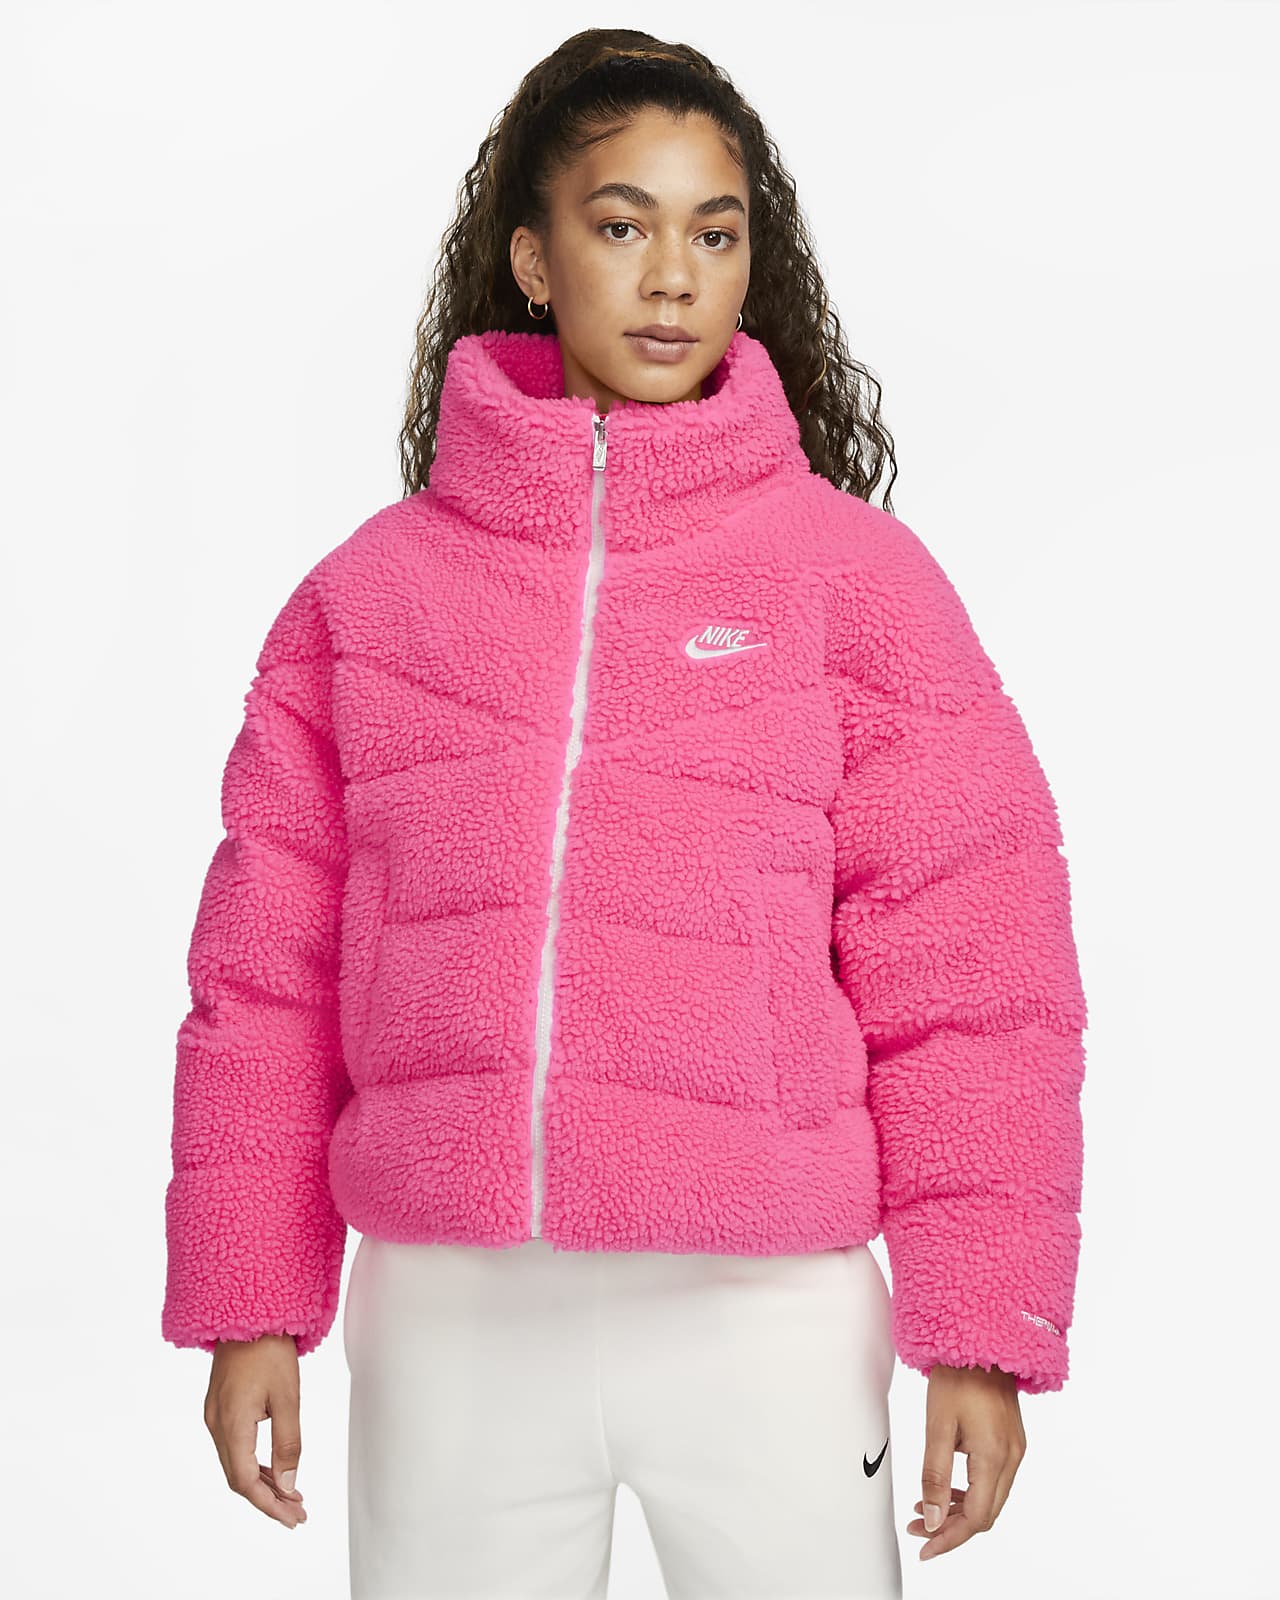 Sportswear City Series Chaqueta de tejido Fleece grueso con relleno sintético - Mujer. Nike ES